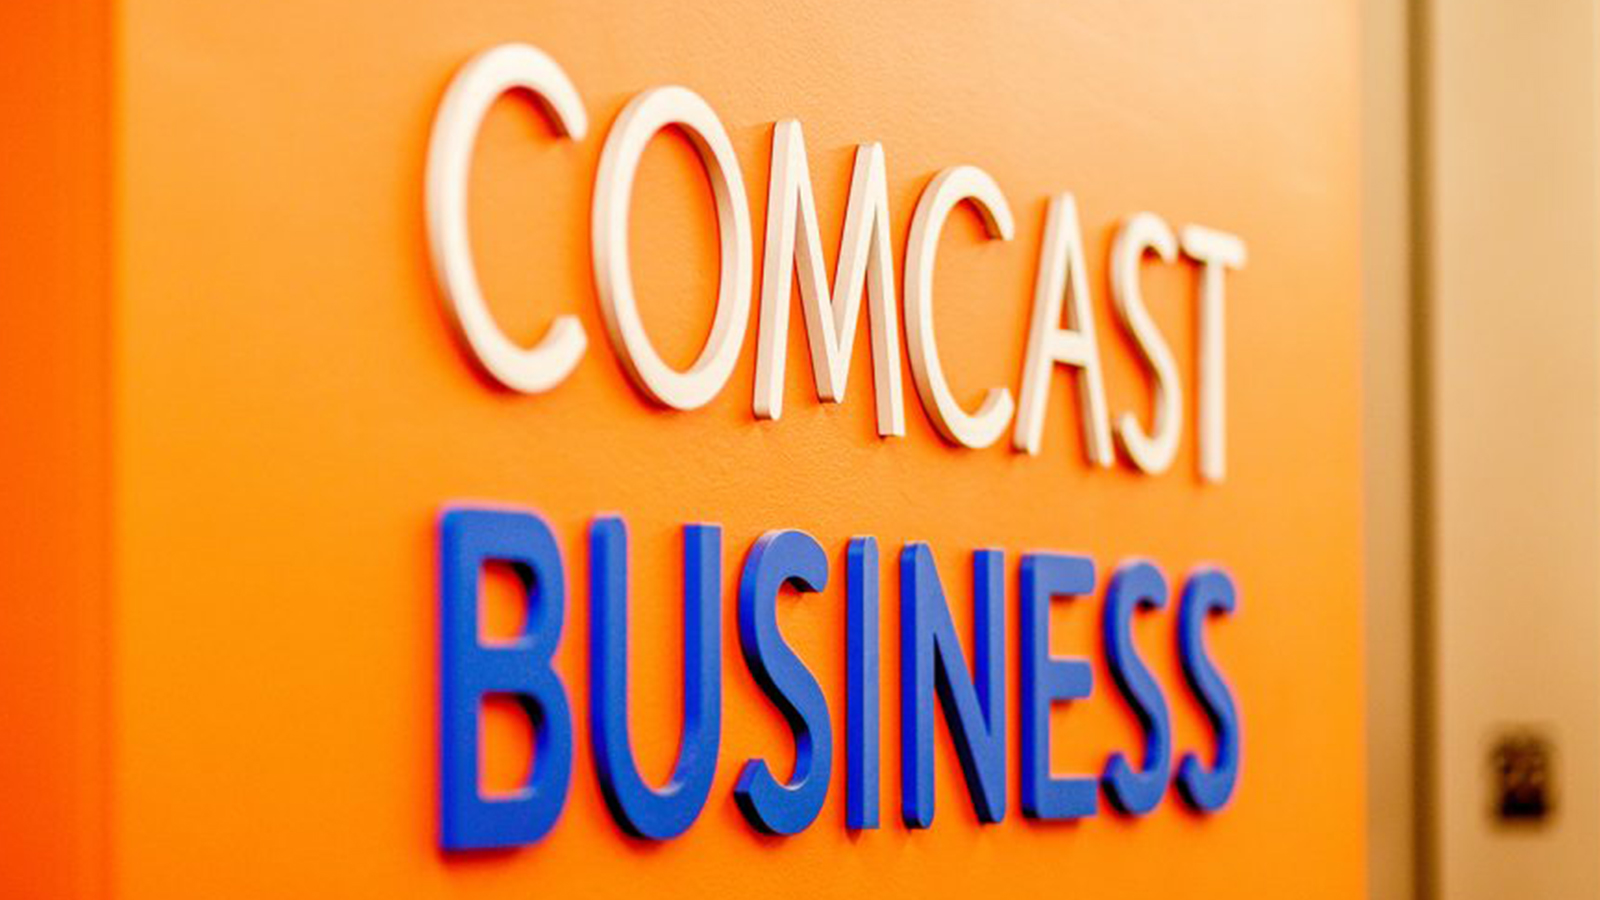 The Comcast Business logo.